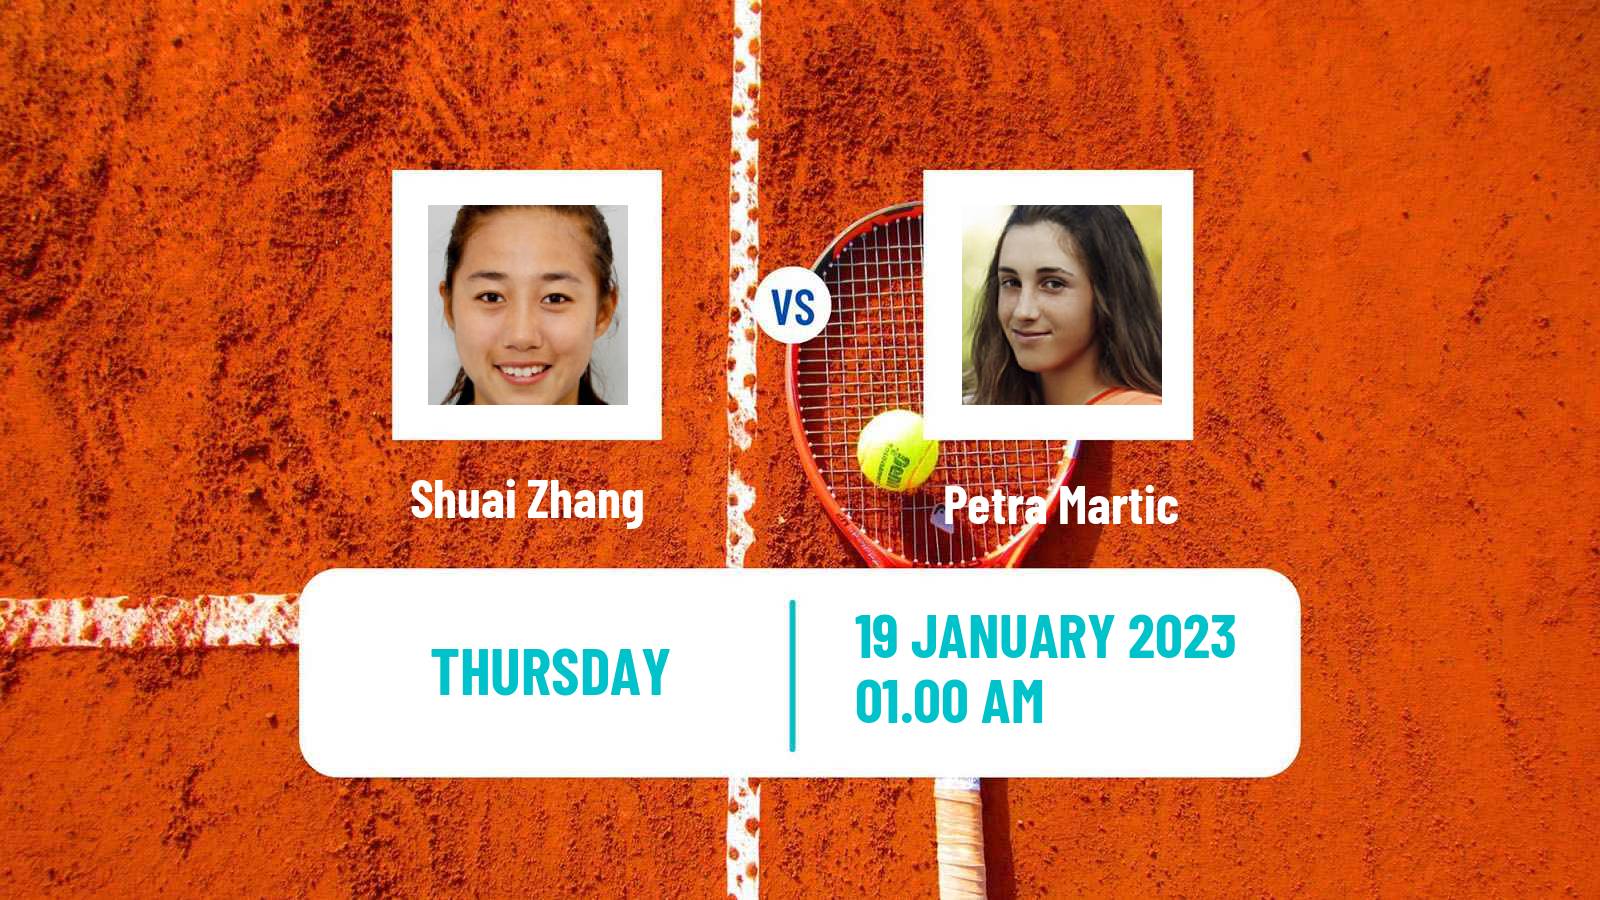 Tennis WTA Australian Open Shuai Zhang - Petra Martic